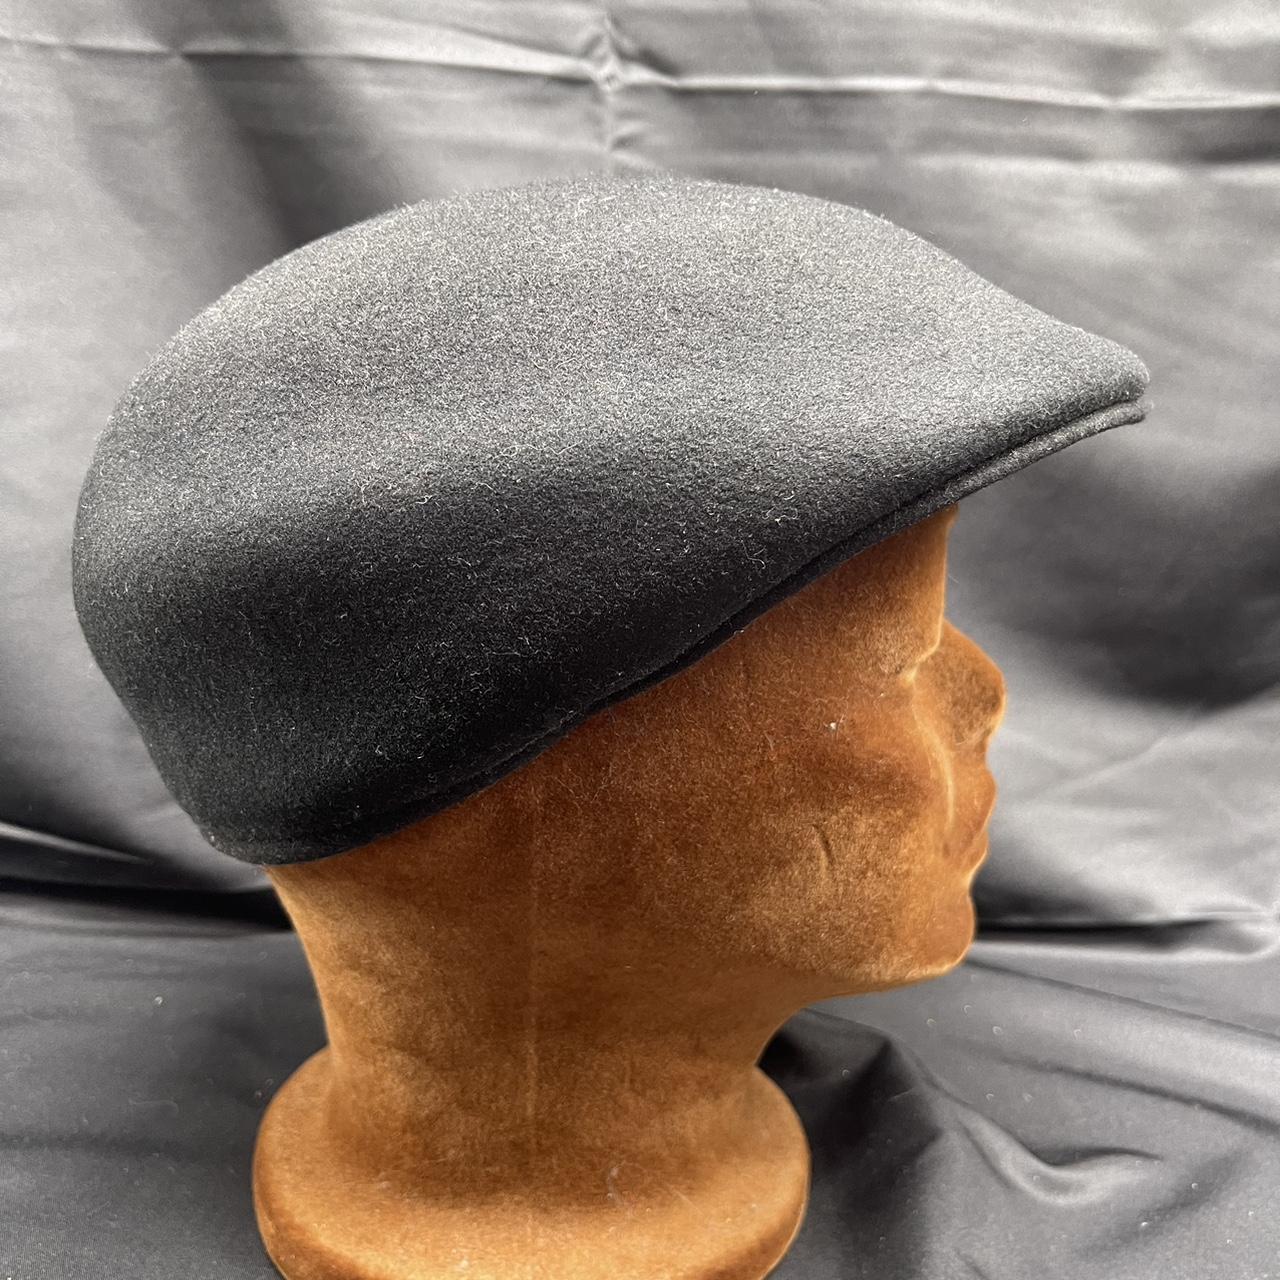 Country Gentleman Men's Black Hat